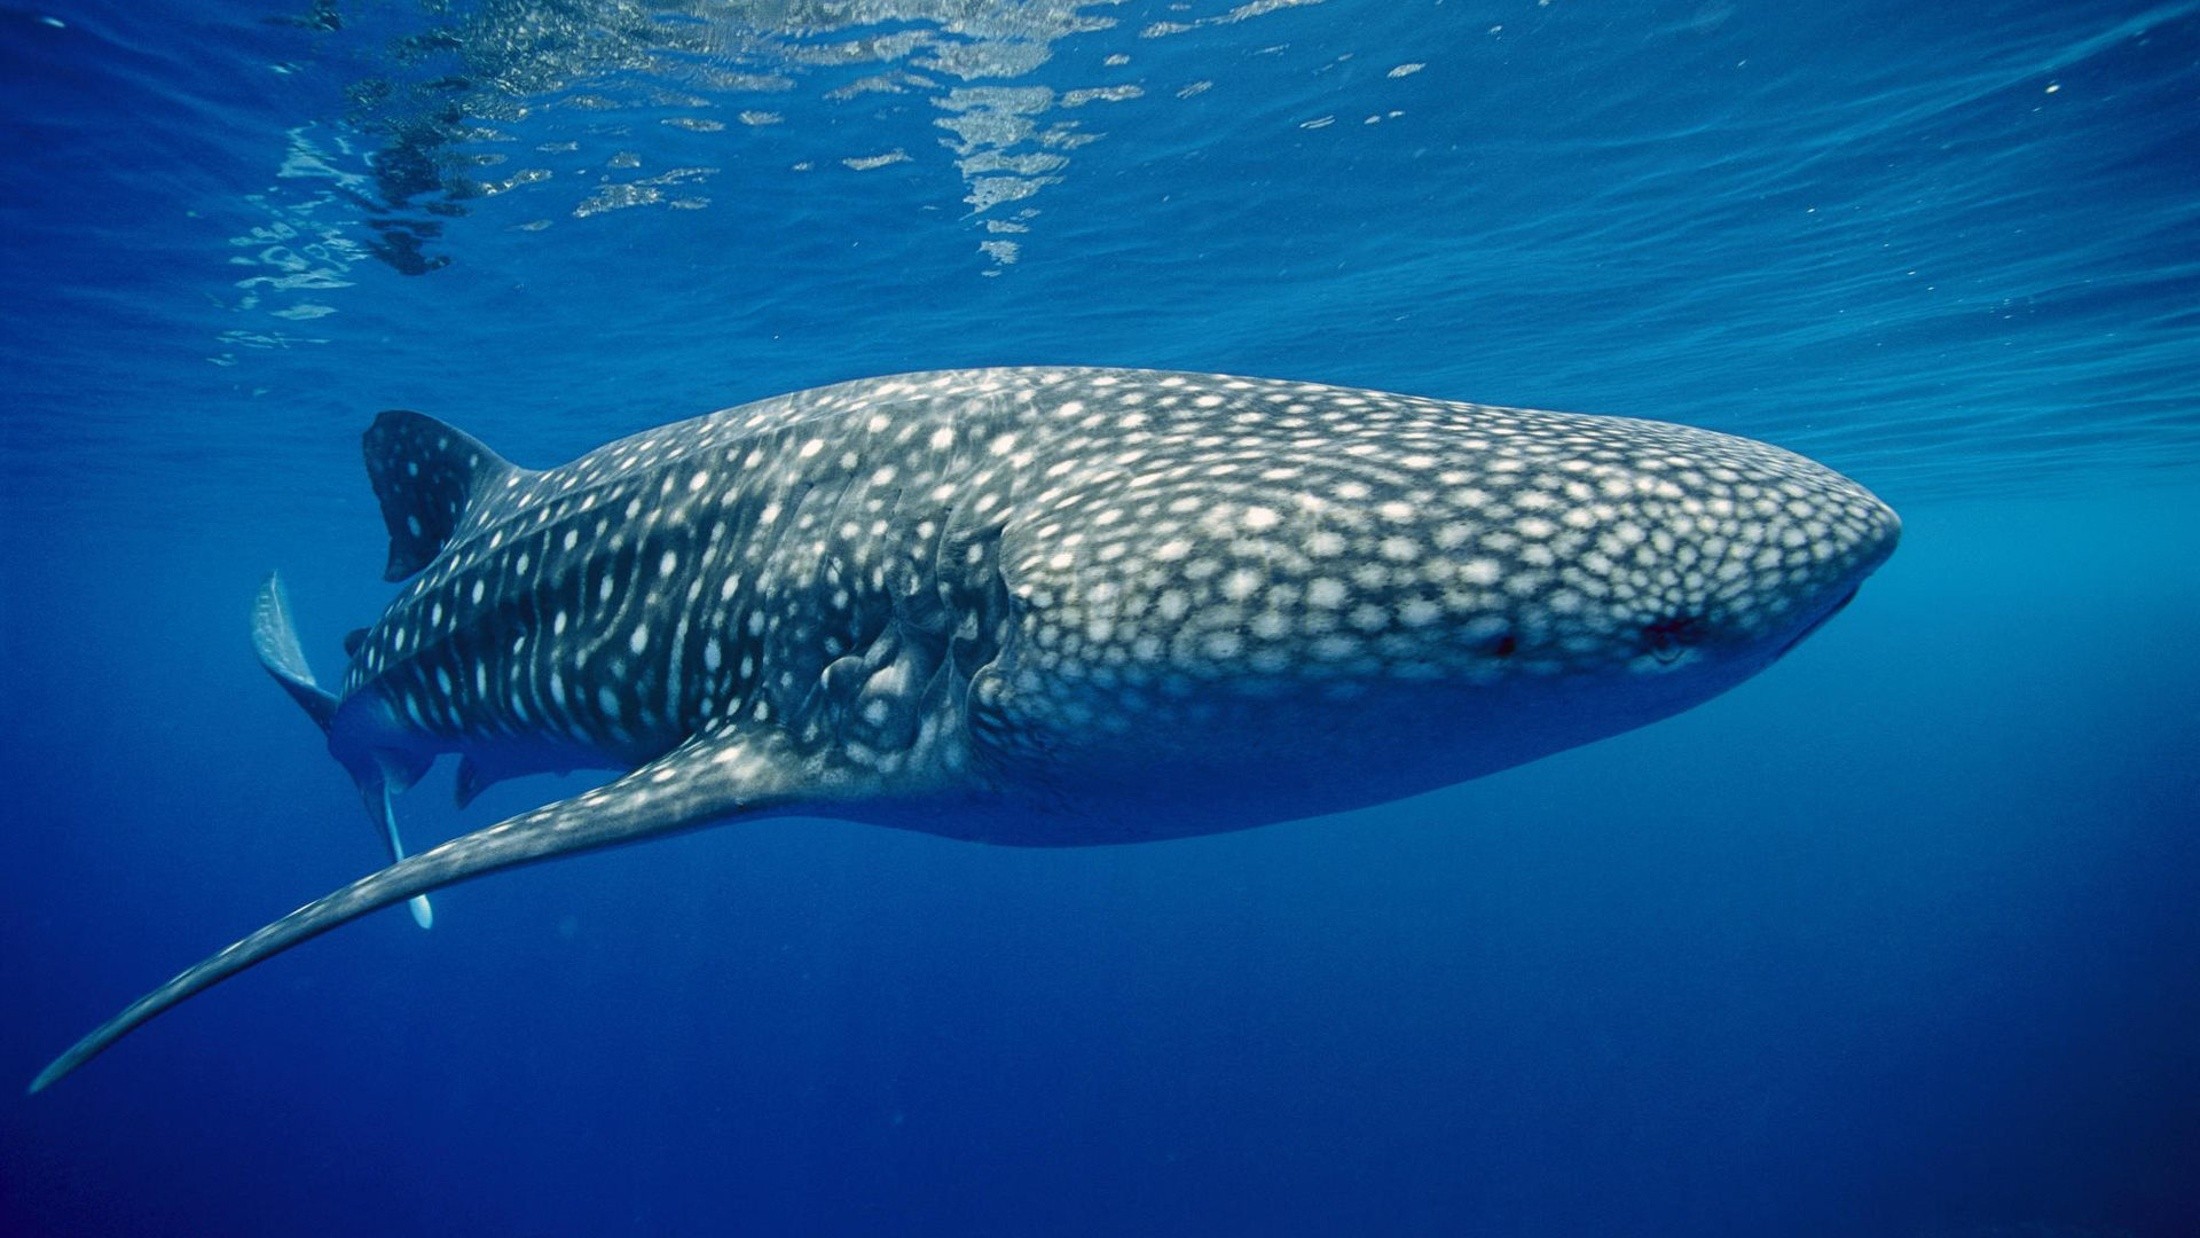 General 2200x1238 whale shark animals fish underwater